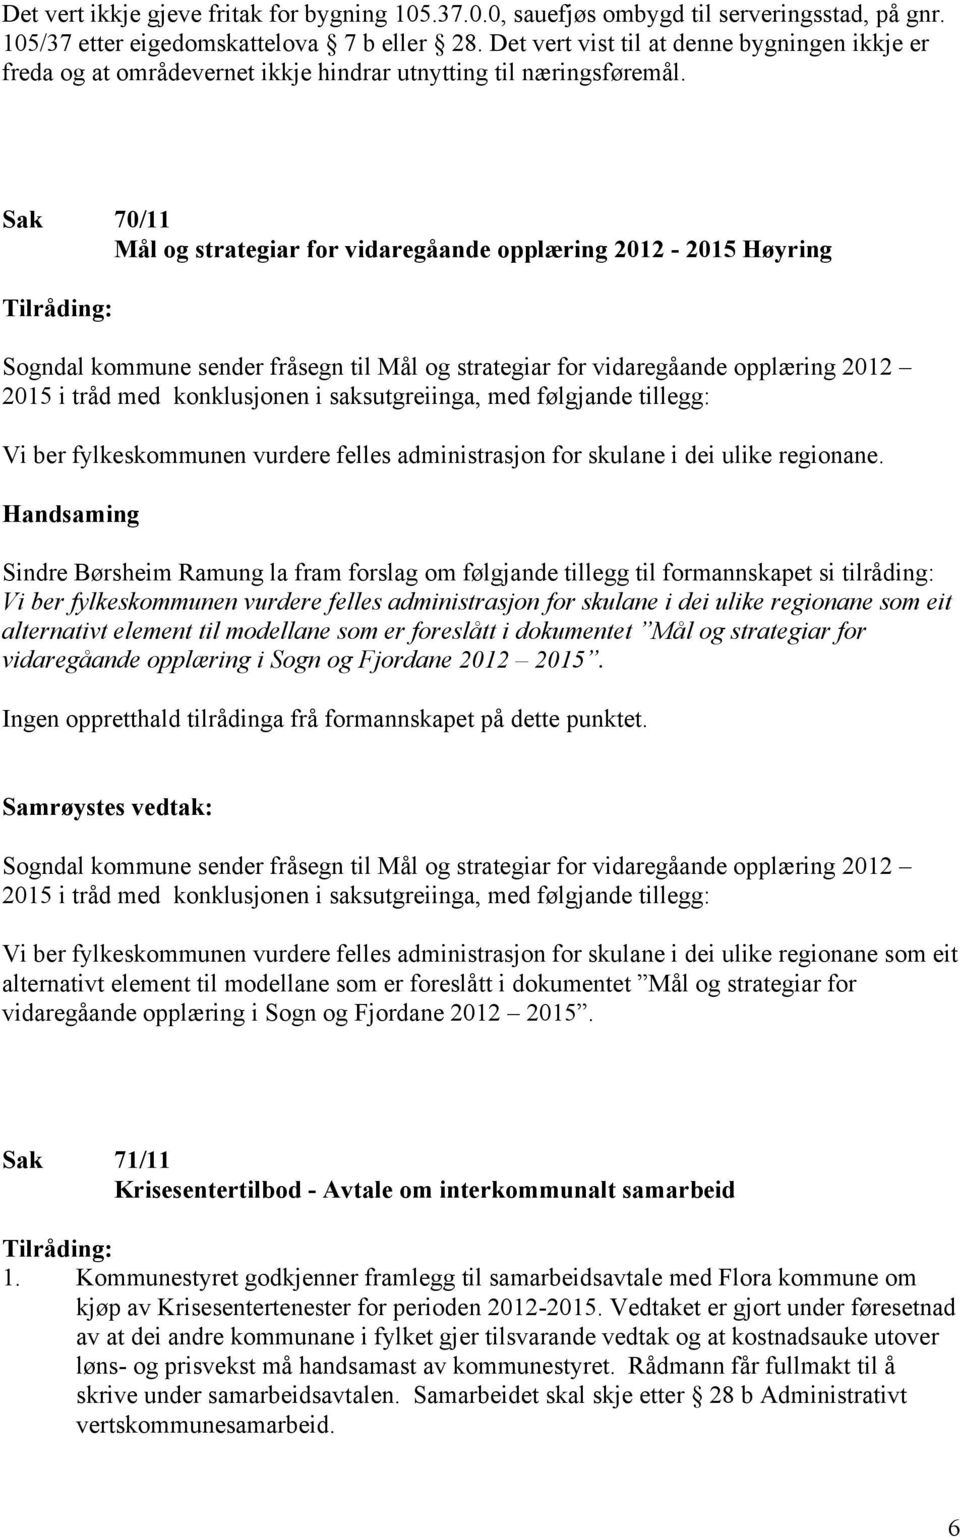 Sak 70/11 Mål og strategiar for vidaregåande opplæring 2012-2015 Høyring Tilråding: Sogndal kommune sender fråsegn til Mål og strategiar for vidaregåande opplæring 2012 2015 i tråd med konklusjonen i